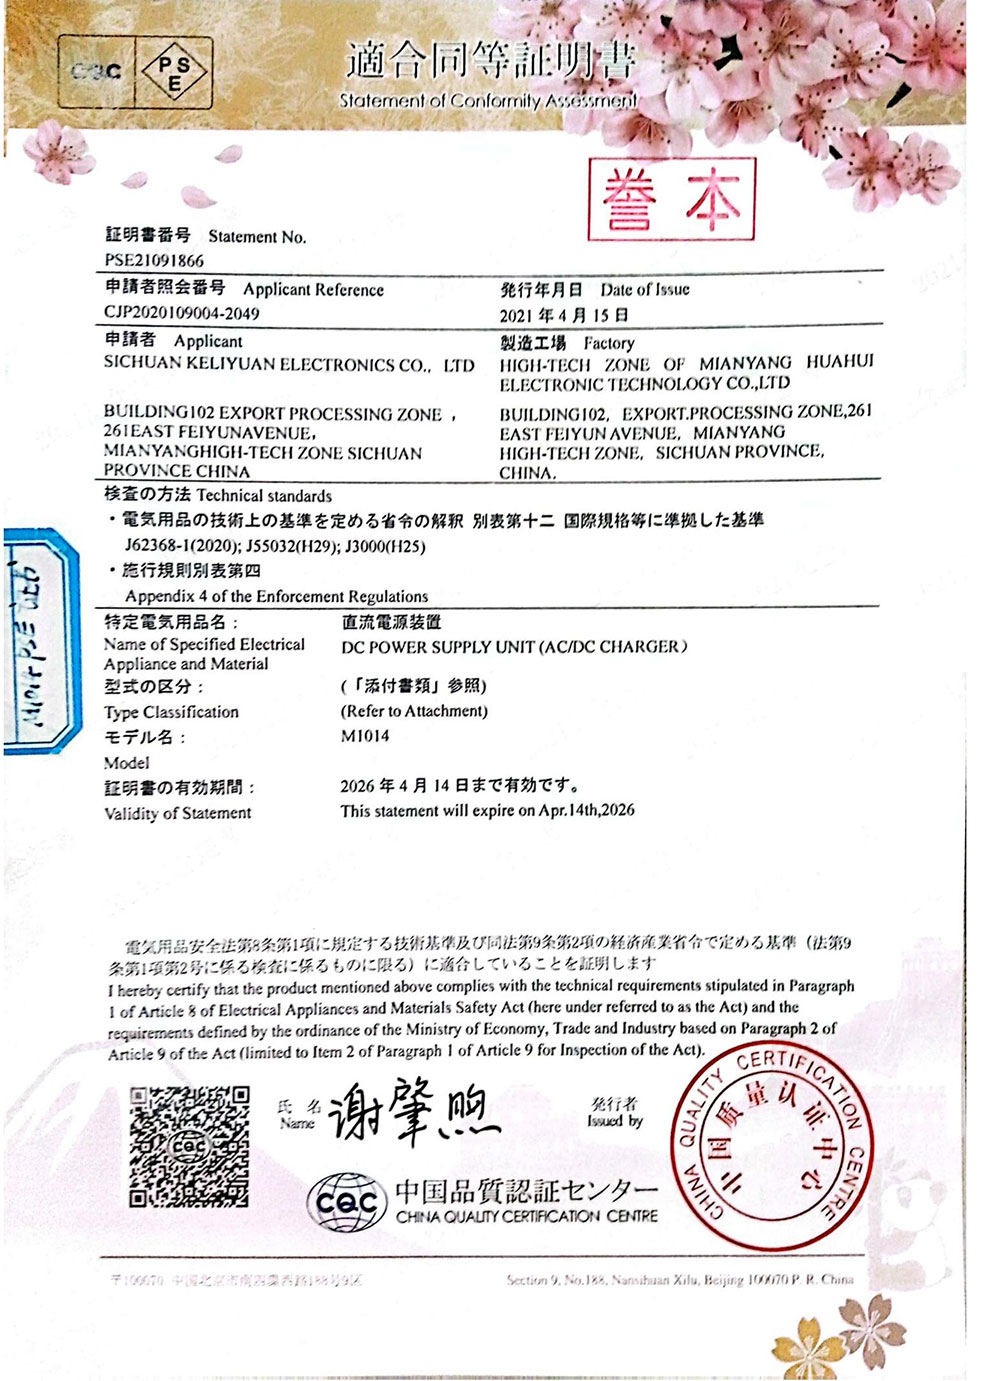 PSE-Certificate_1_00